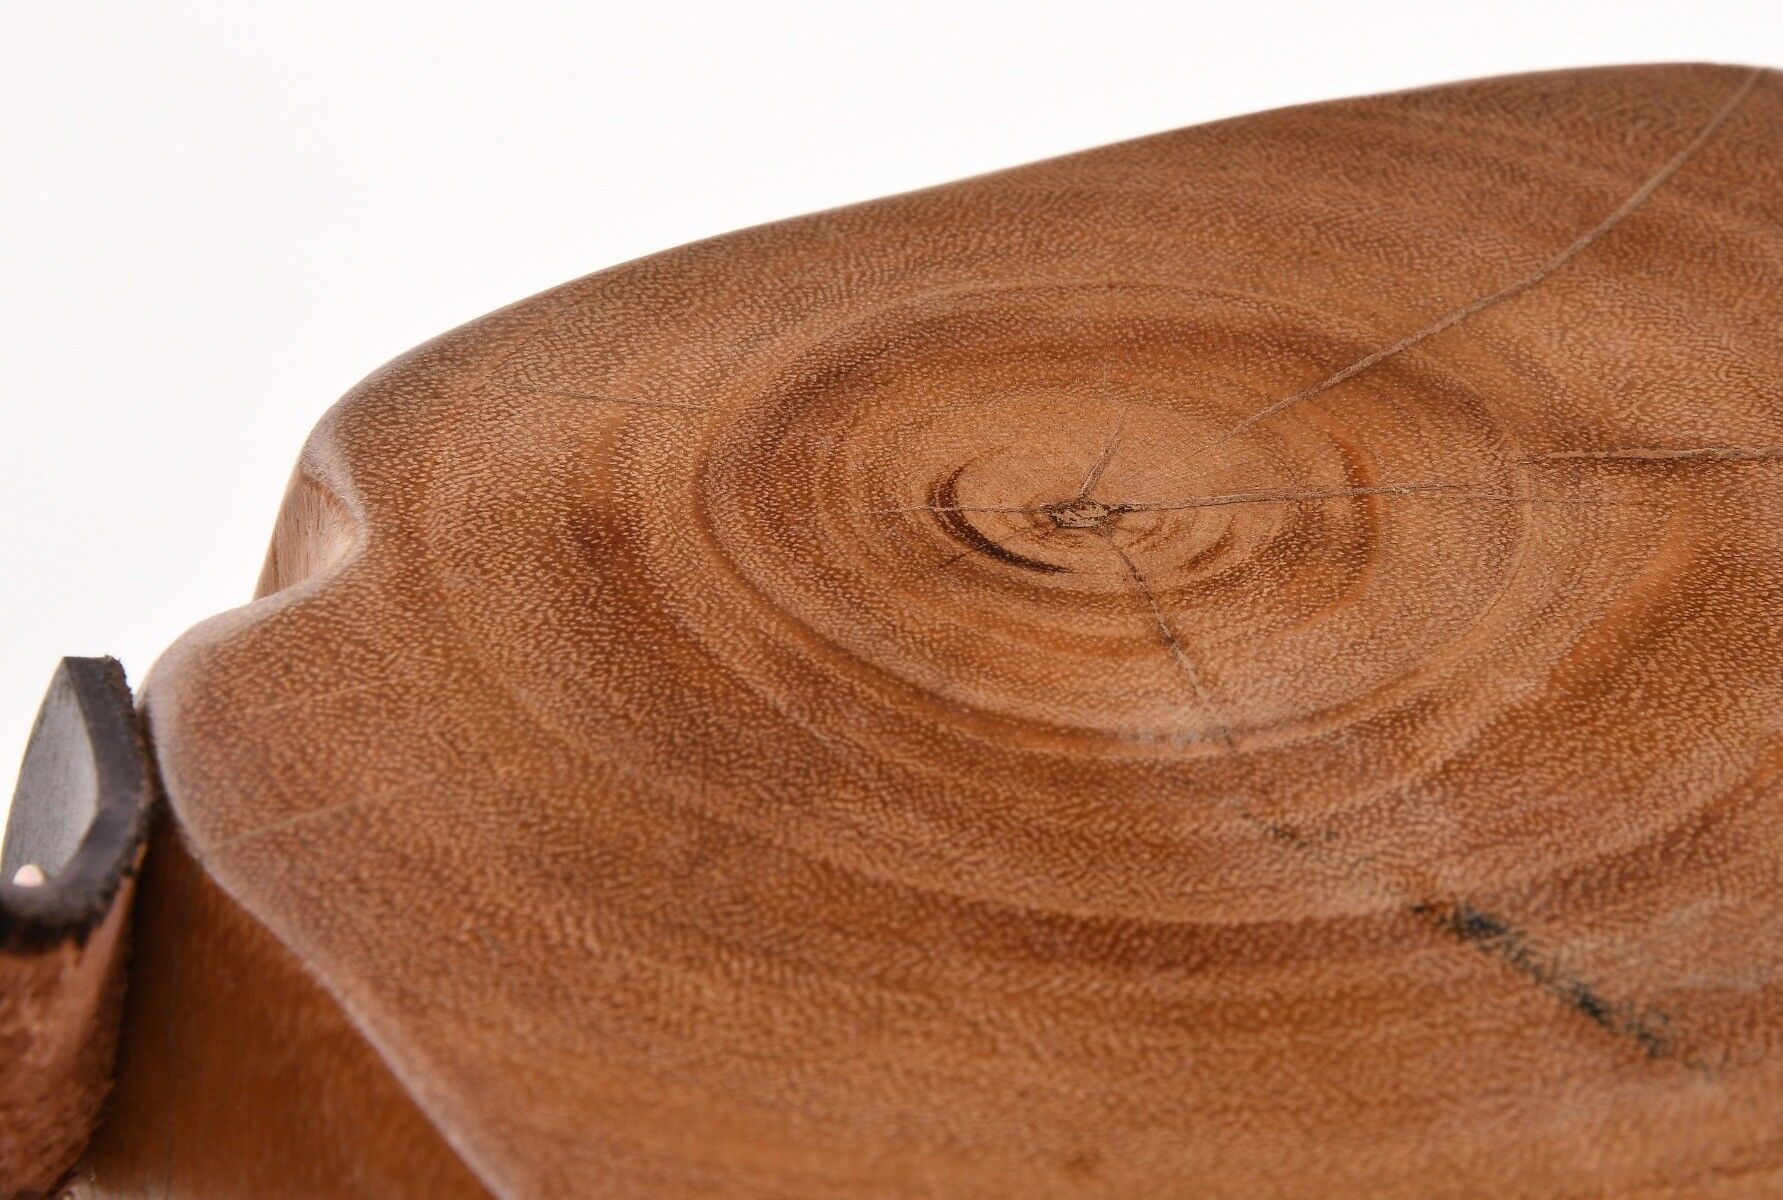 Stołek drewniany w formie torby Natural Secret 25x30x25 cm